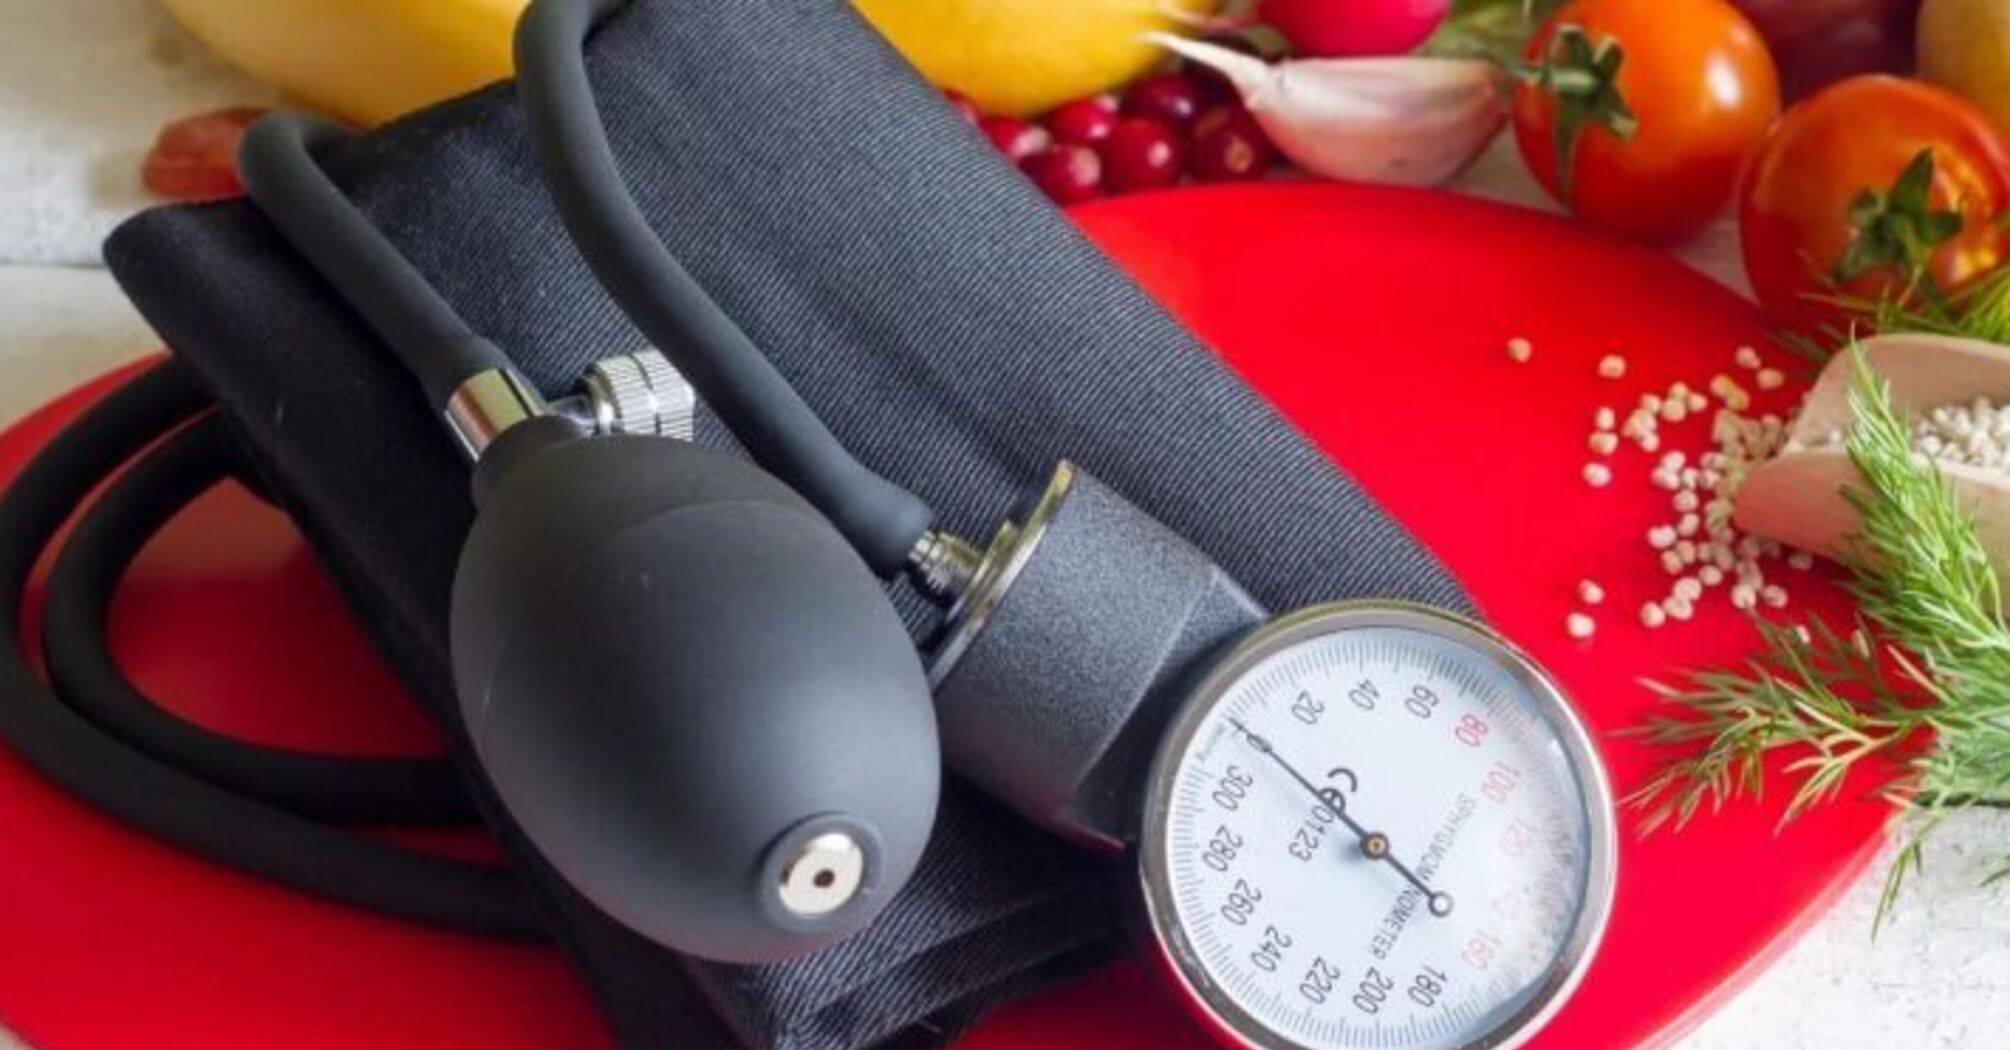 Jakie pokarmy najlepiej obniżają ciśnienie krwi?